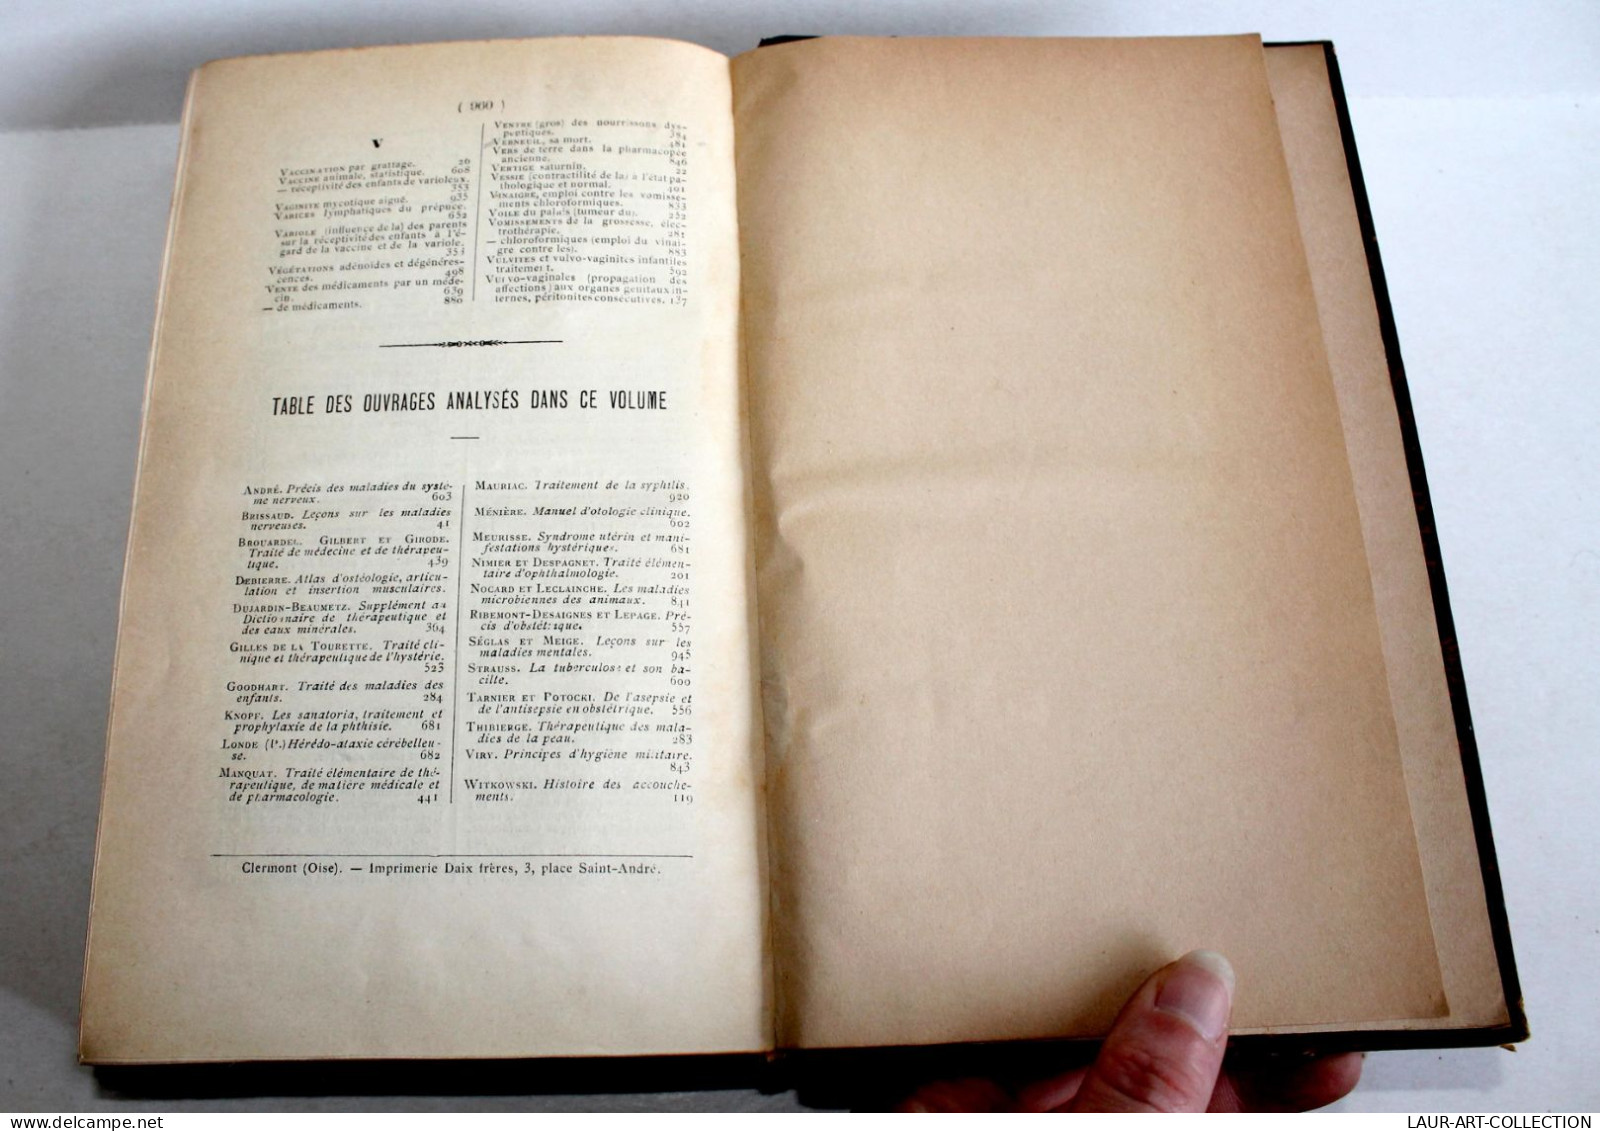 JOURNAL DE MEDECINE & DE CHIRURGIE PRATIQUES, USAGE DES MEDECINS PRATICIENS 1895 / ANCIEN LIVRE XIXe SIECLE (2603.77)